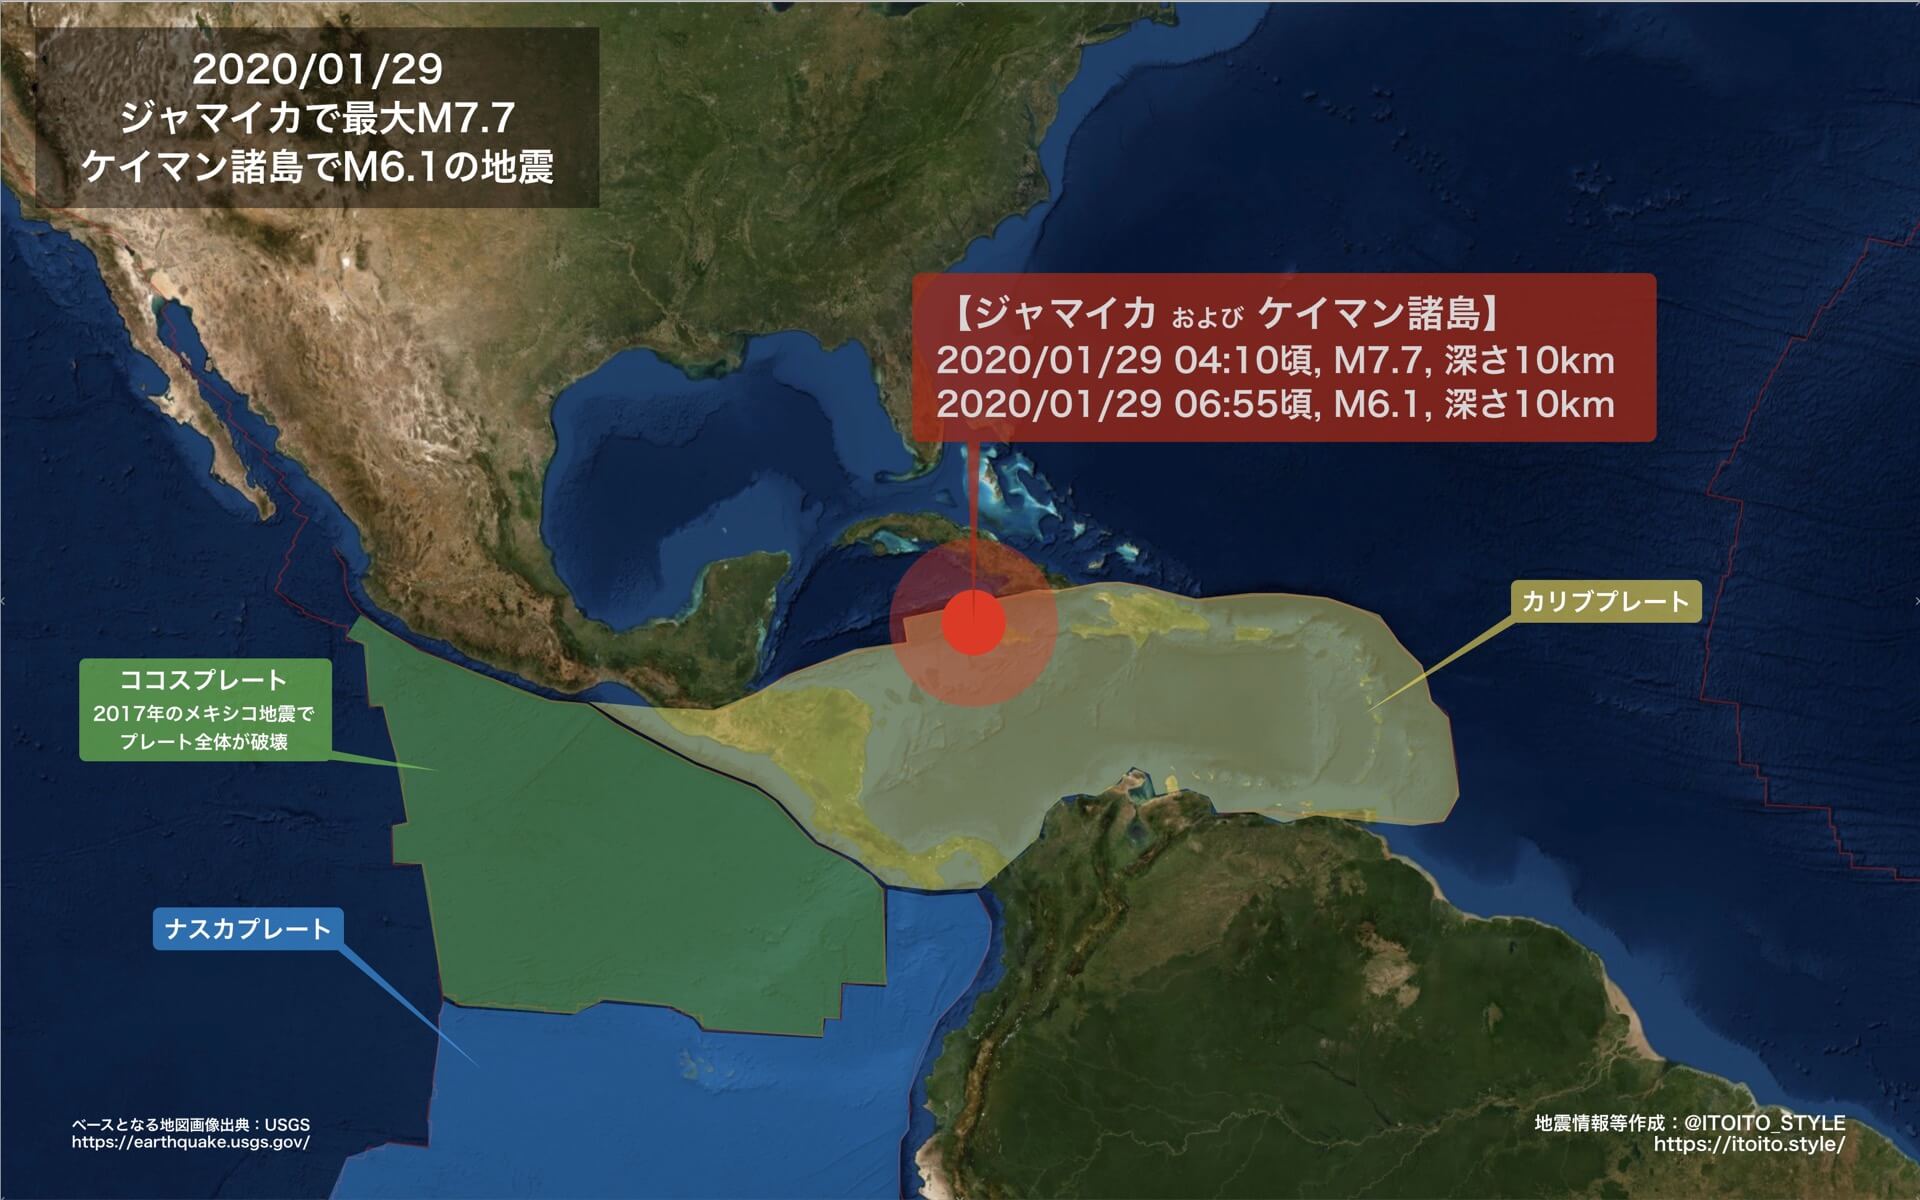 海外 ジャマイカでm7 7の大規模地震 01 29 Itoito Style